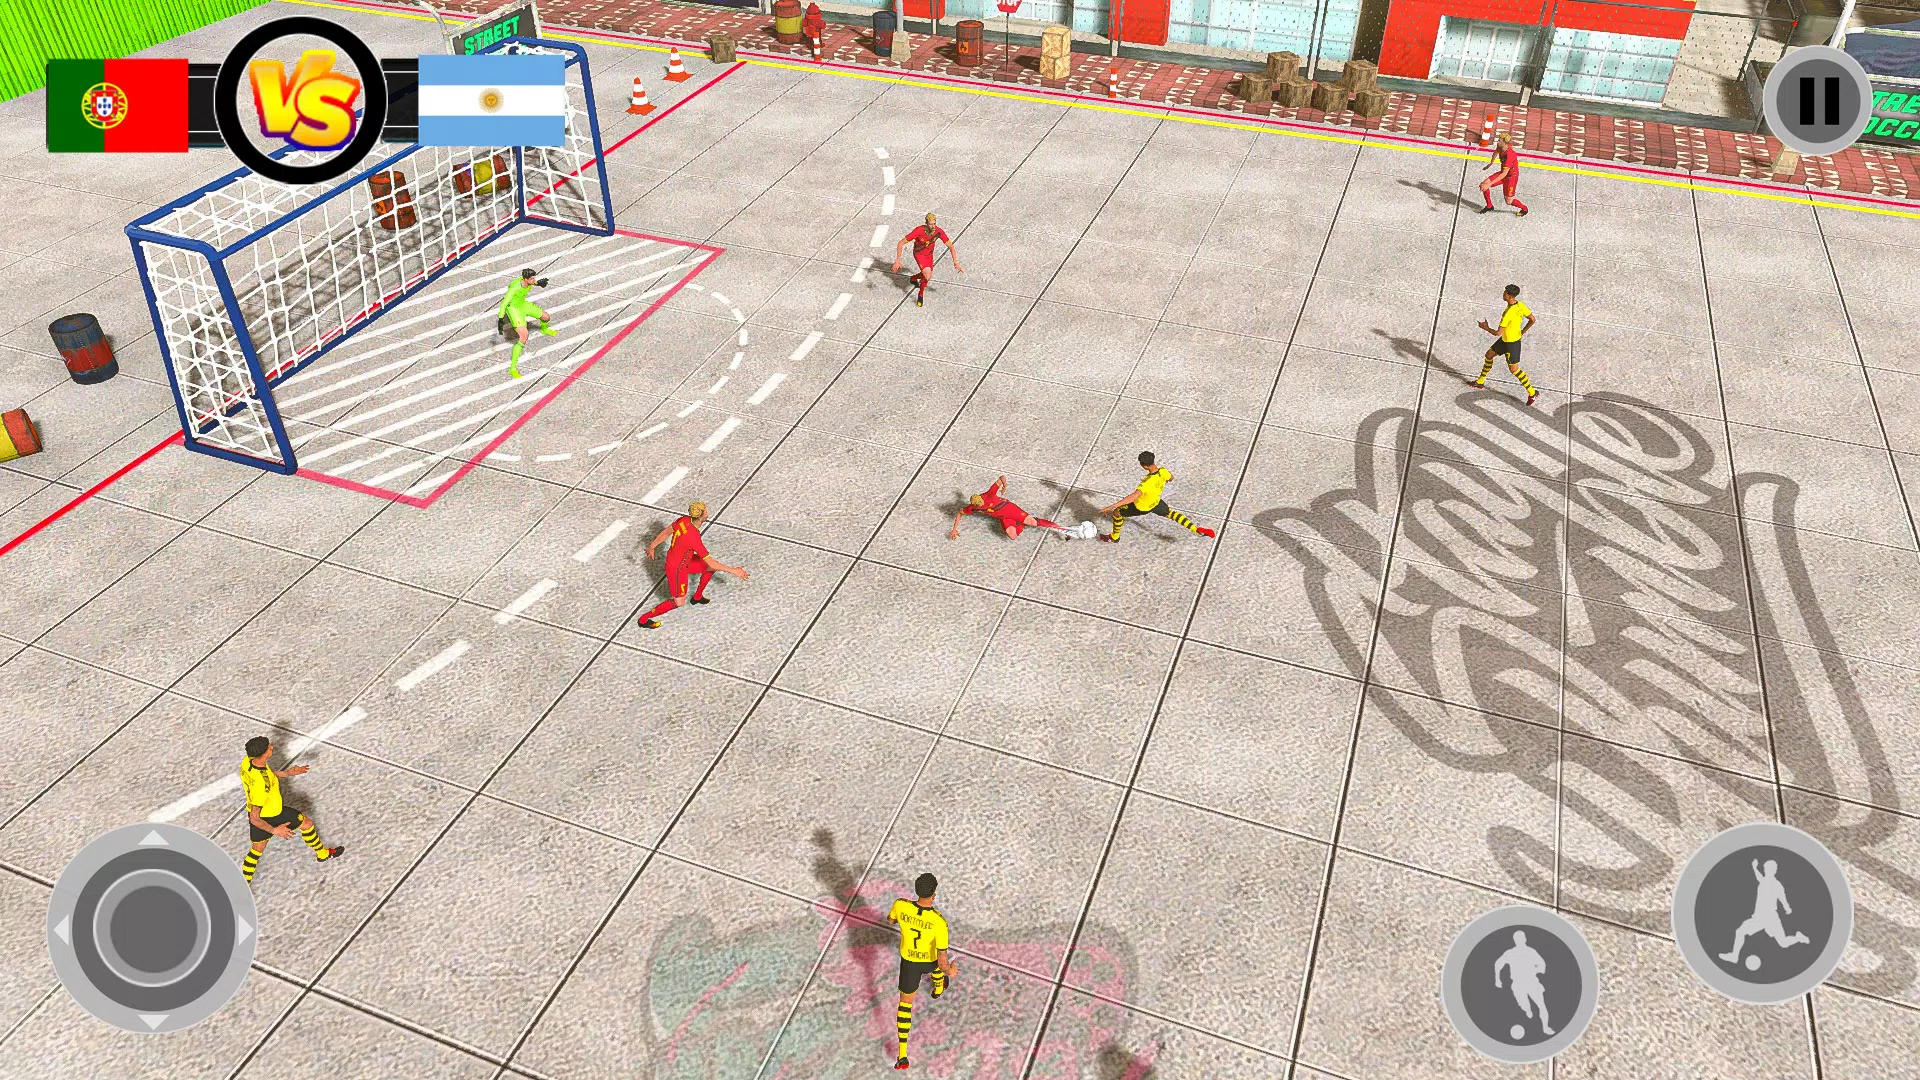 FOOTBALL STRIKE: ONLINE SOCCER jogo online gratuito em Minijogos